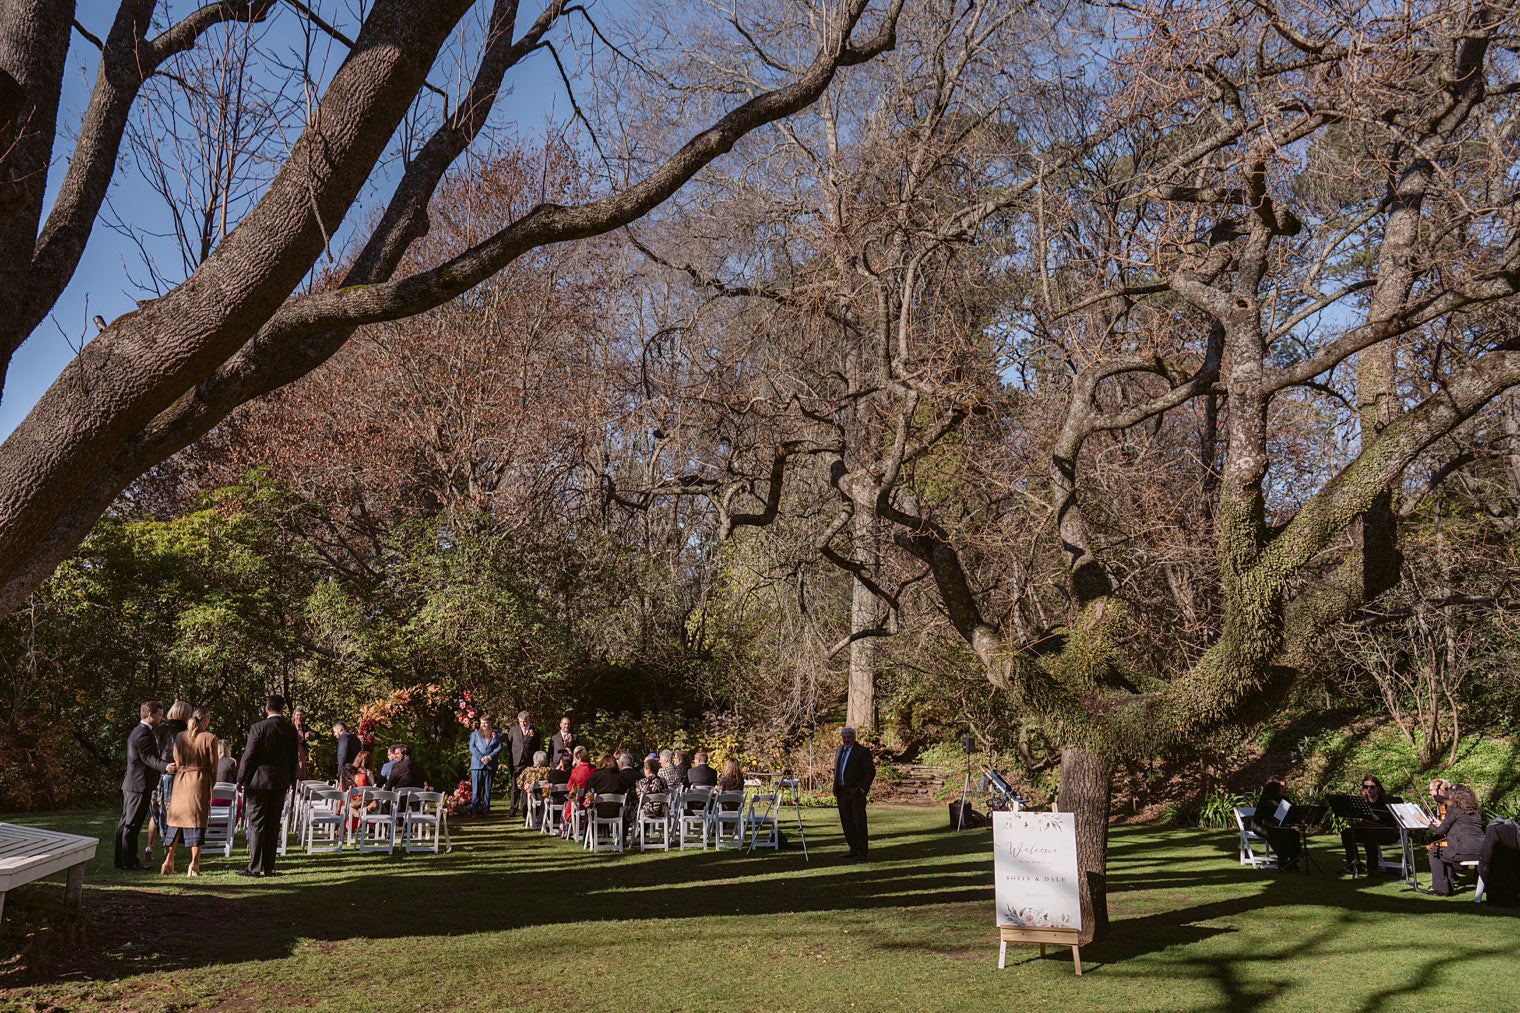 outdoor garden wedding venue milton park bowral nsw